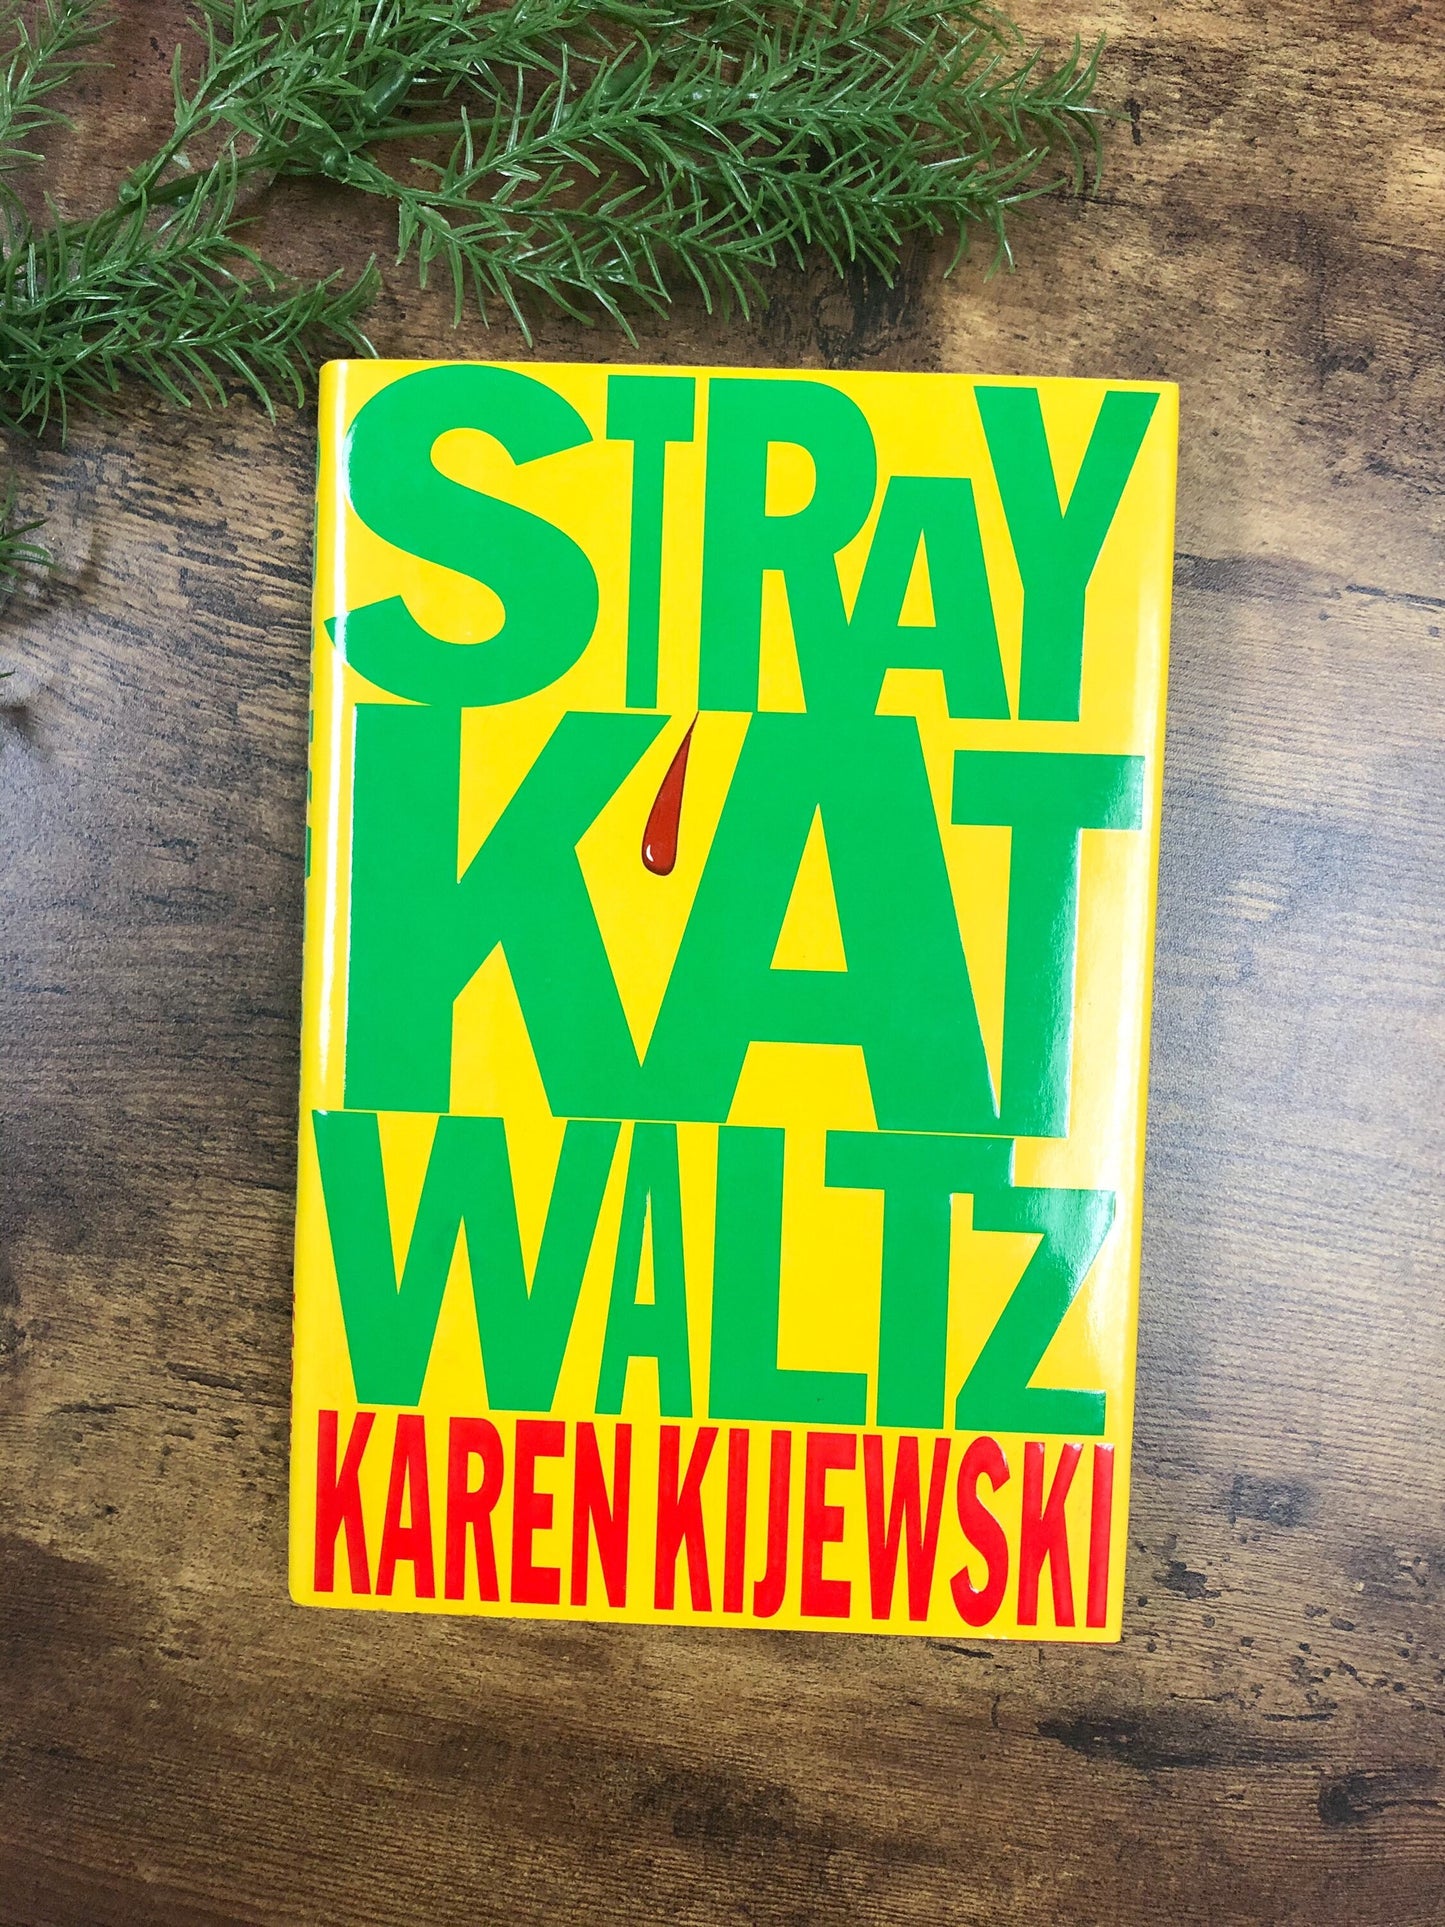 Signed by Karen Kijewski / Stray Kat Waltz